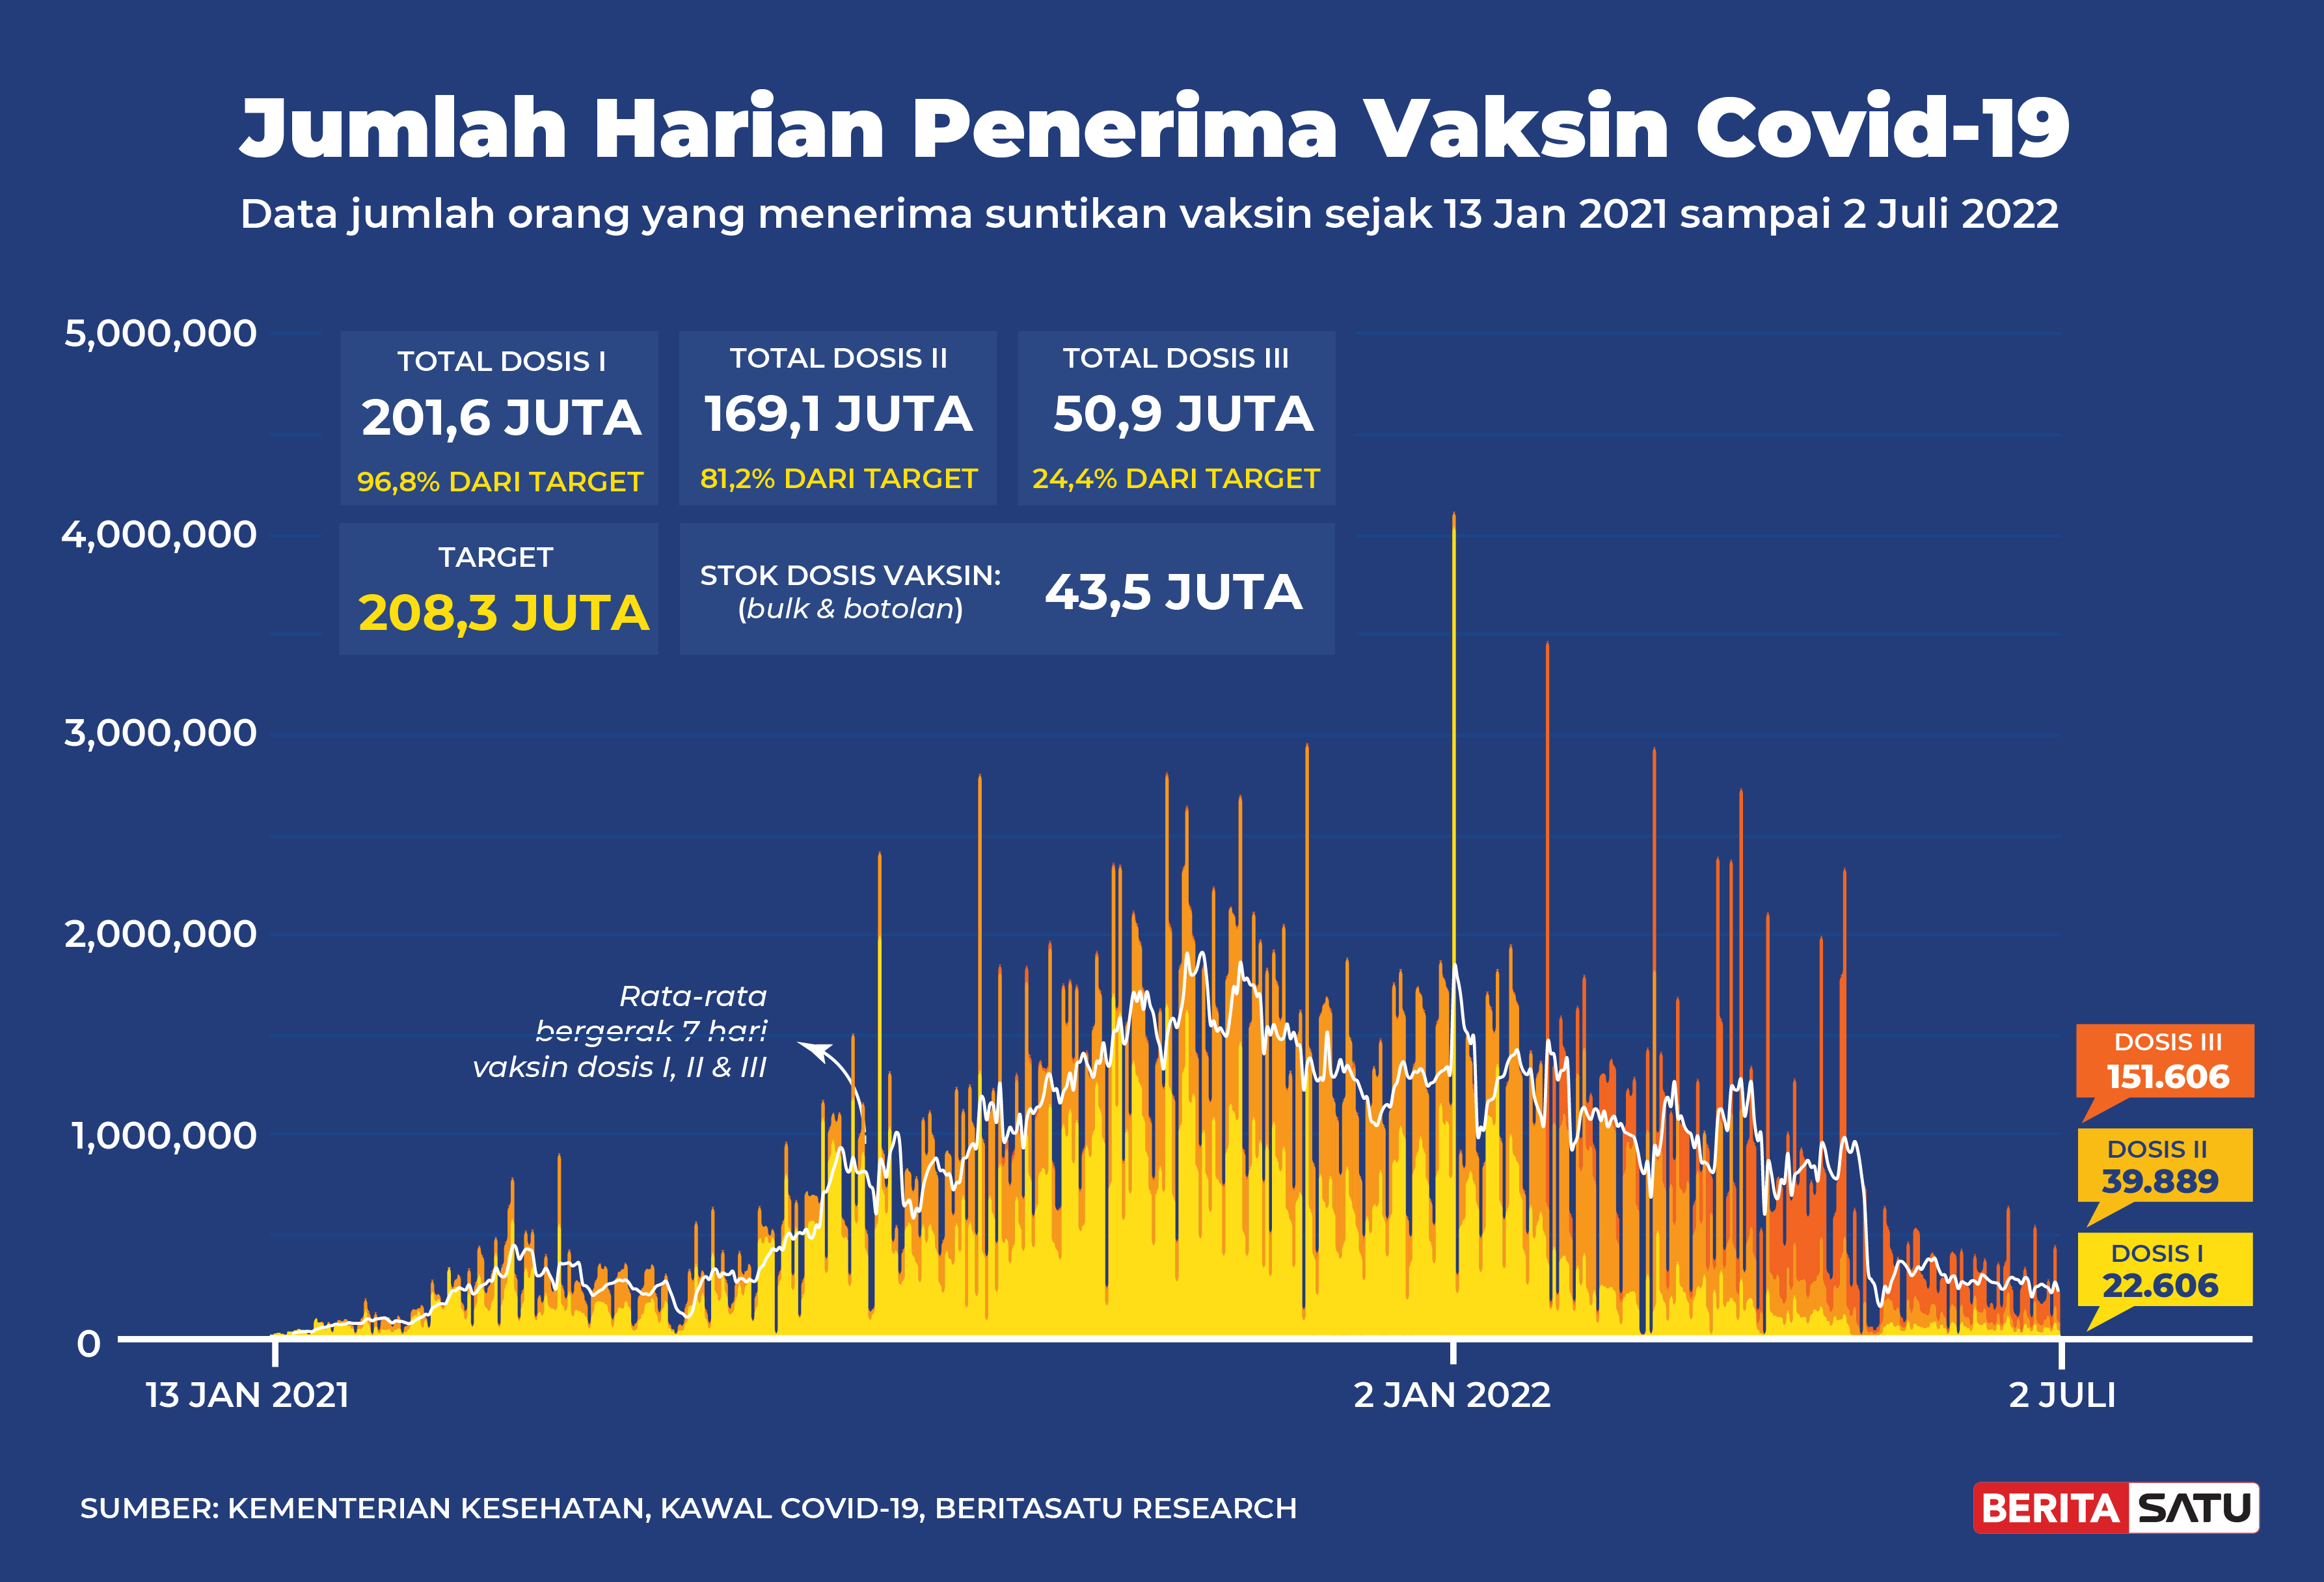 Penerima Vaksin Covid-19 di Indonesia sampai 2 Juli 2022